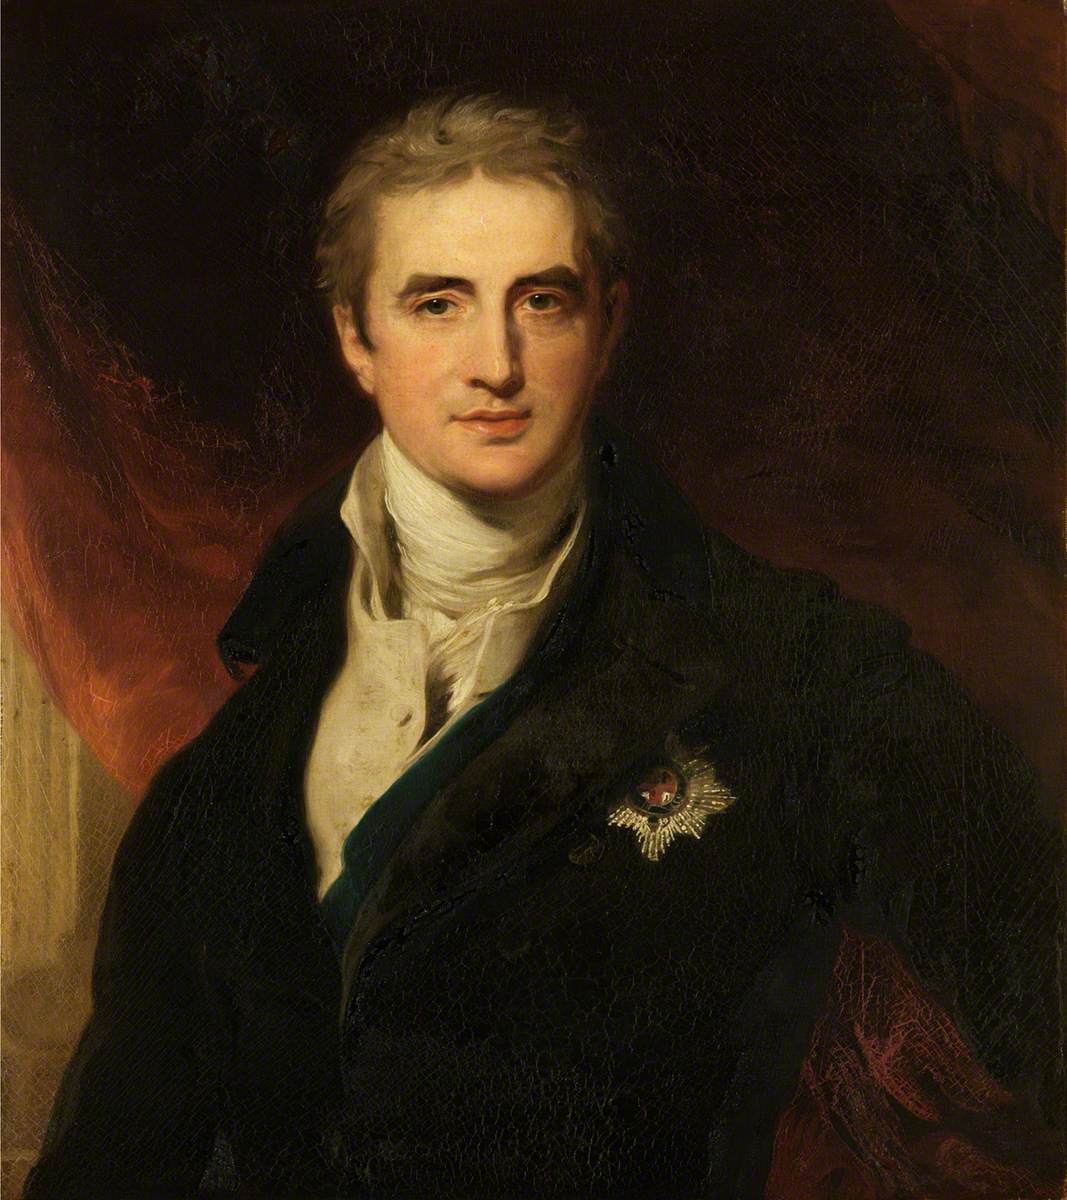 Robert Stewart, Earl of Castlereagh